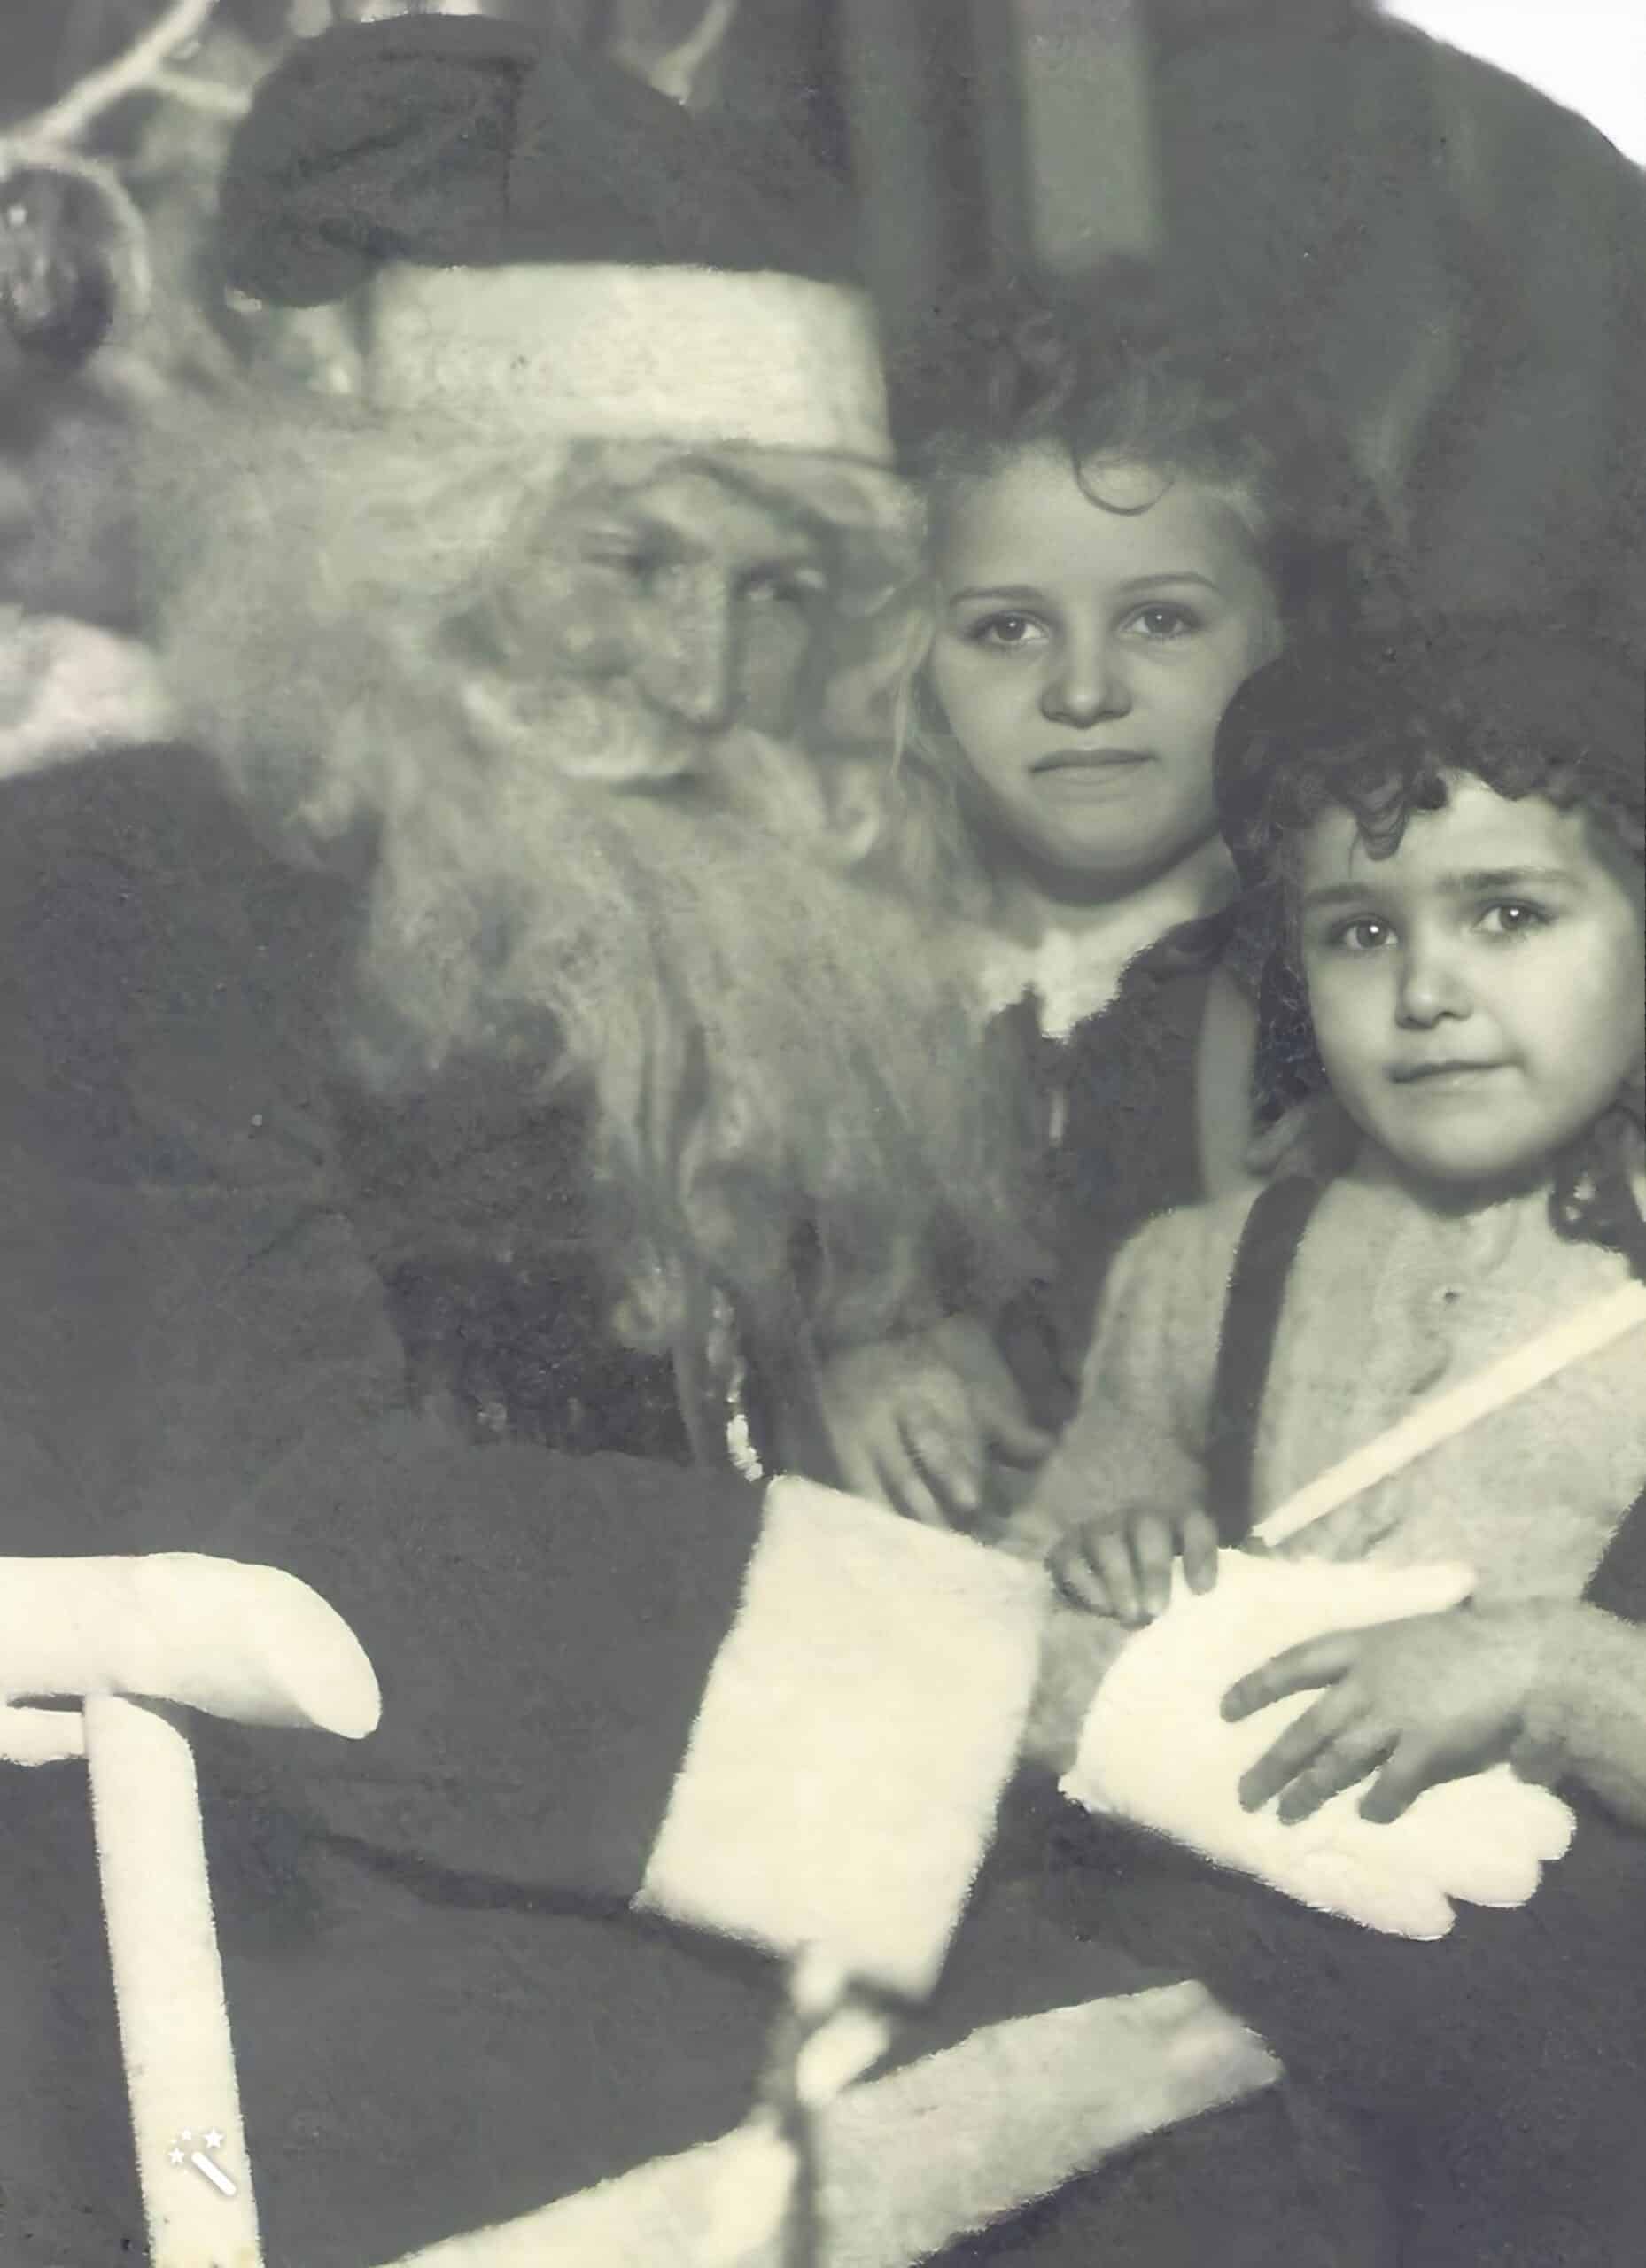 Carol og Roberta på julemandens knæ. Forbedret og repareret af MyHeritage